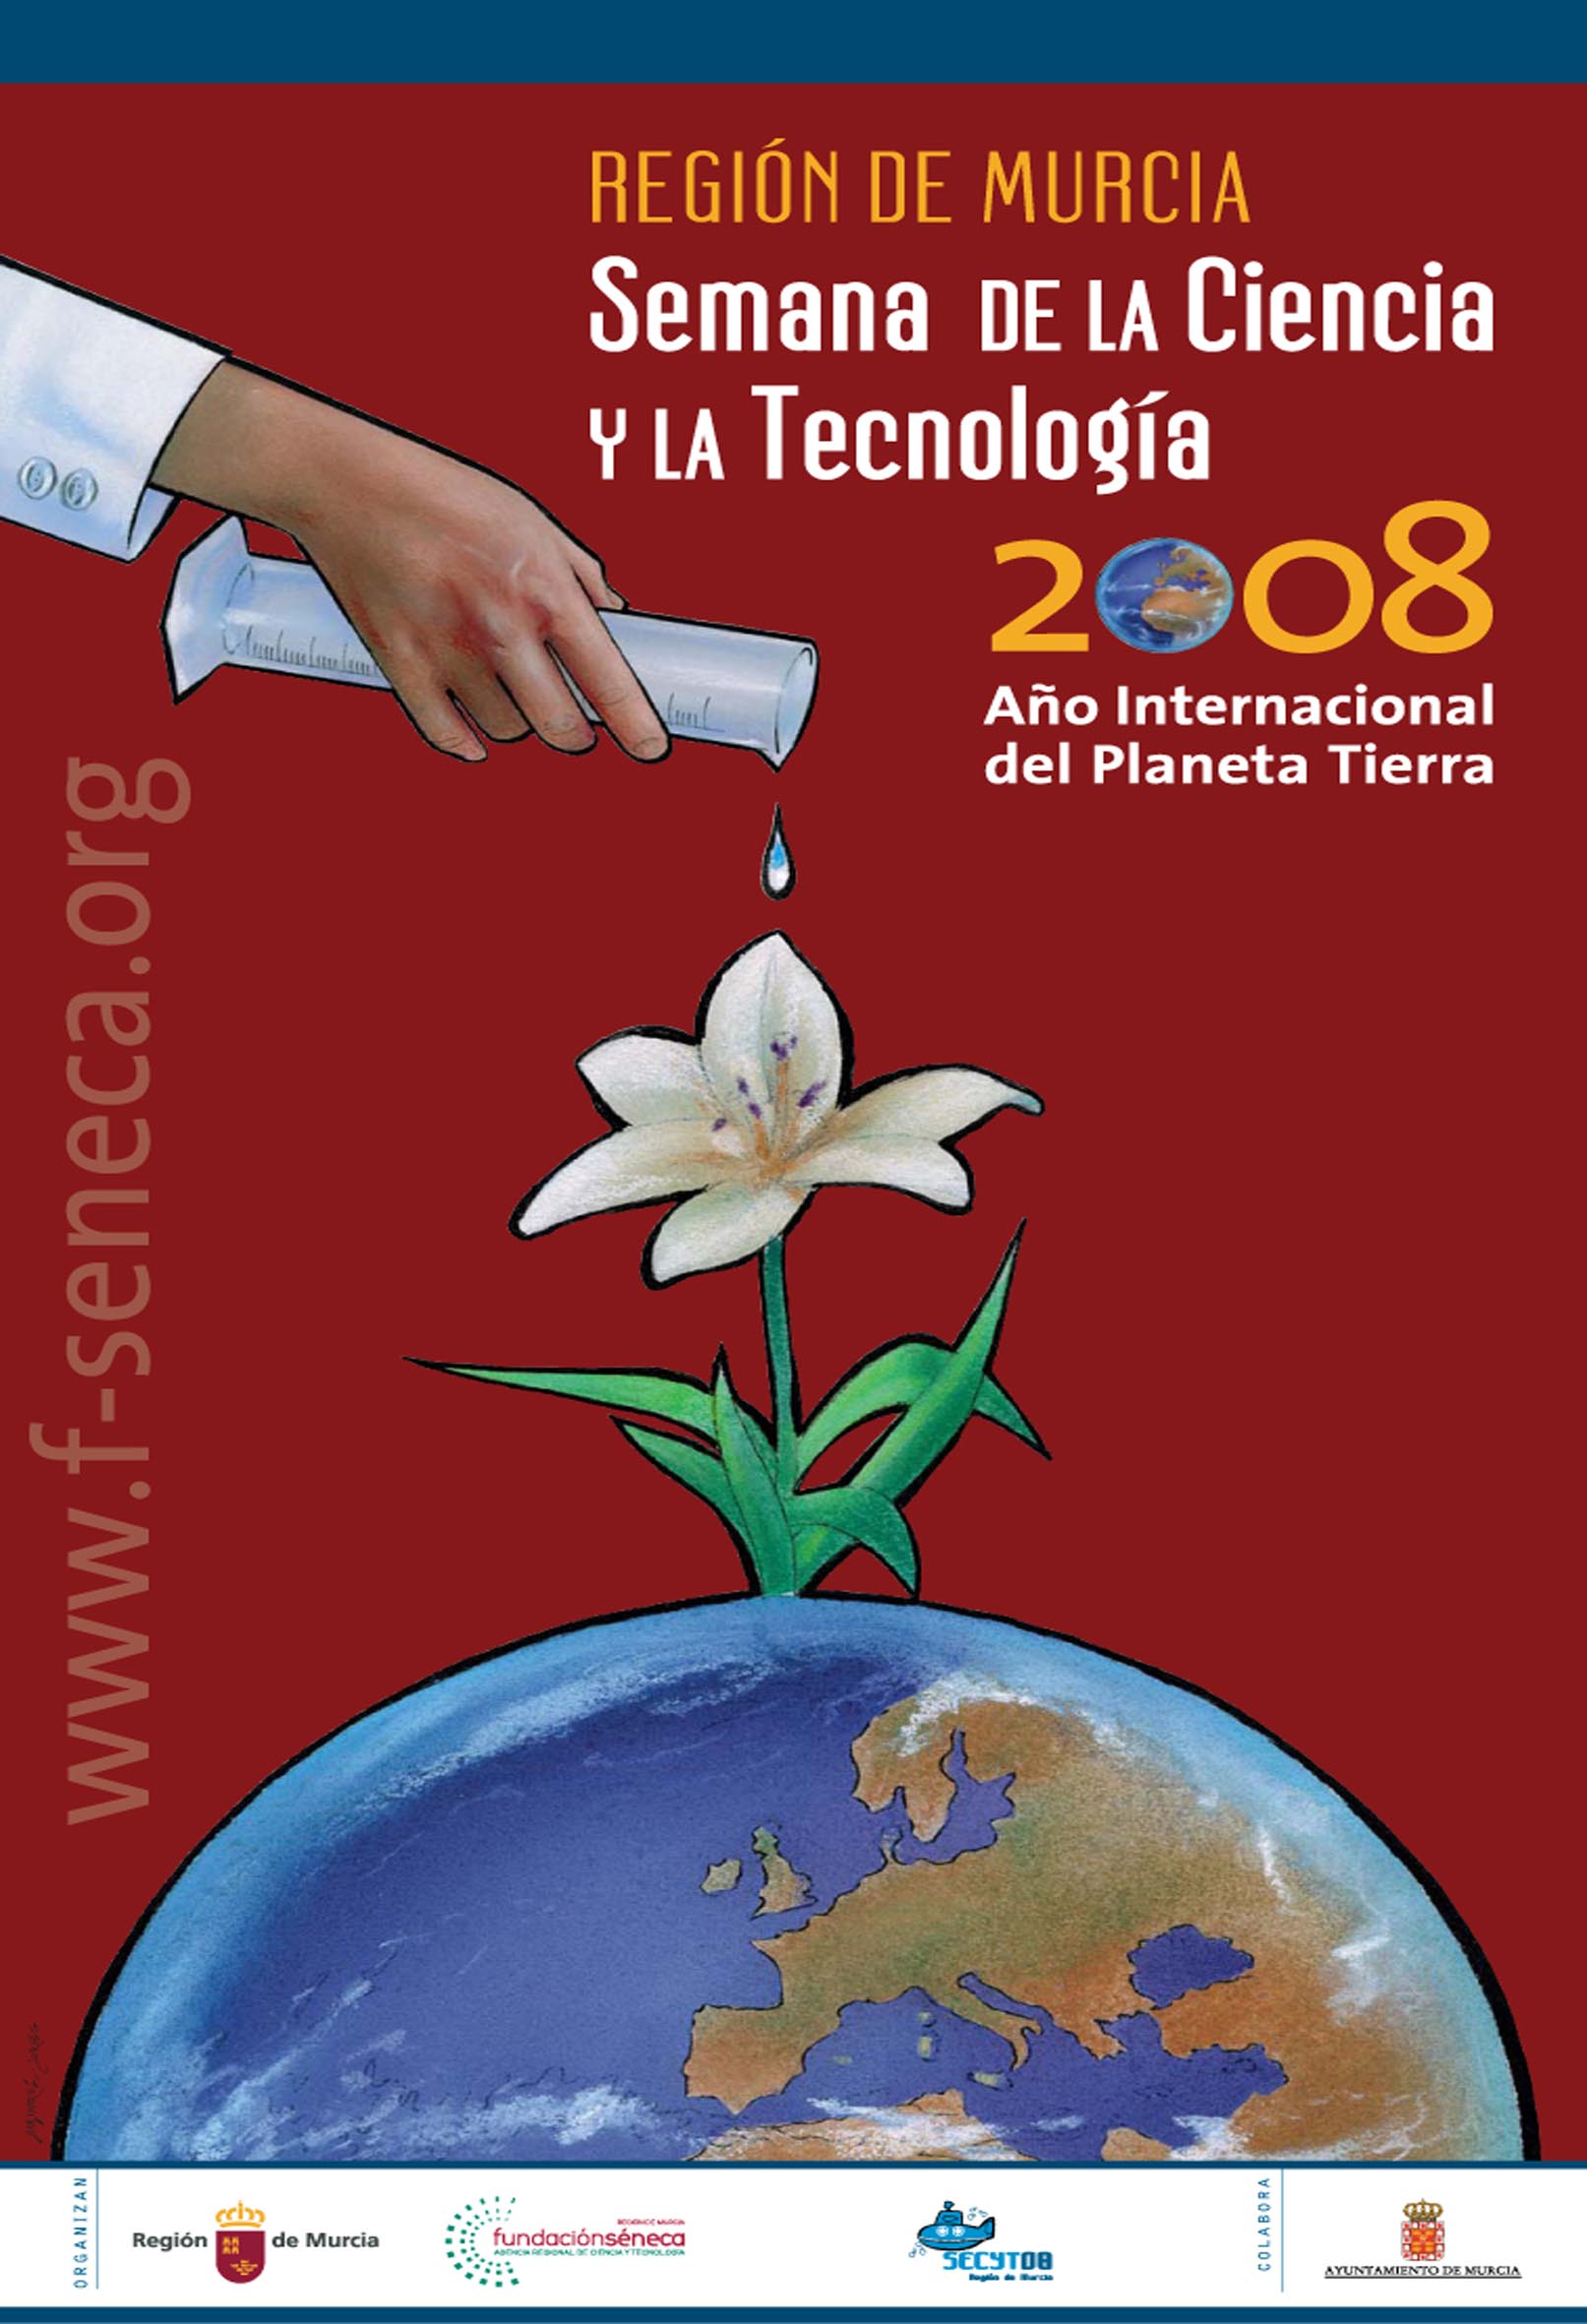 Semana de la Ciencia y la Tecnología 2008